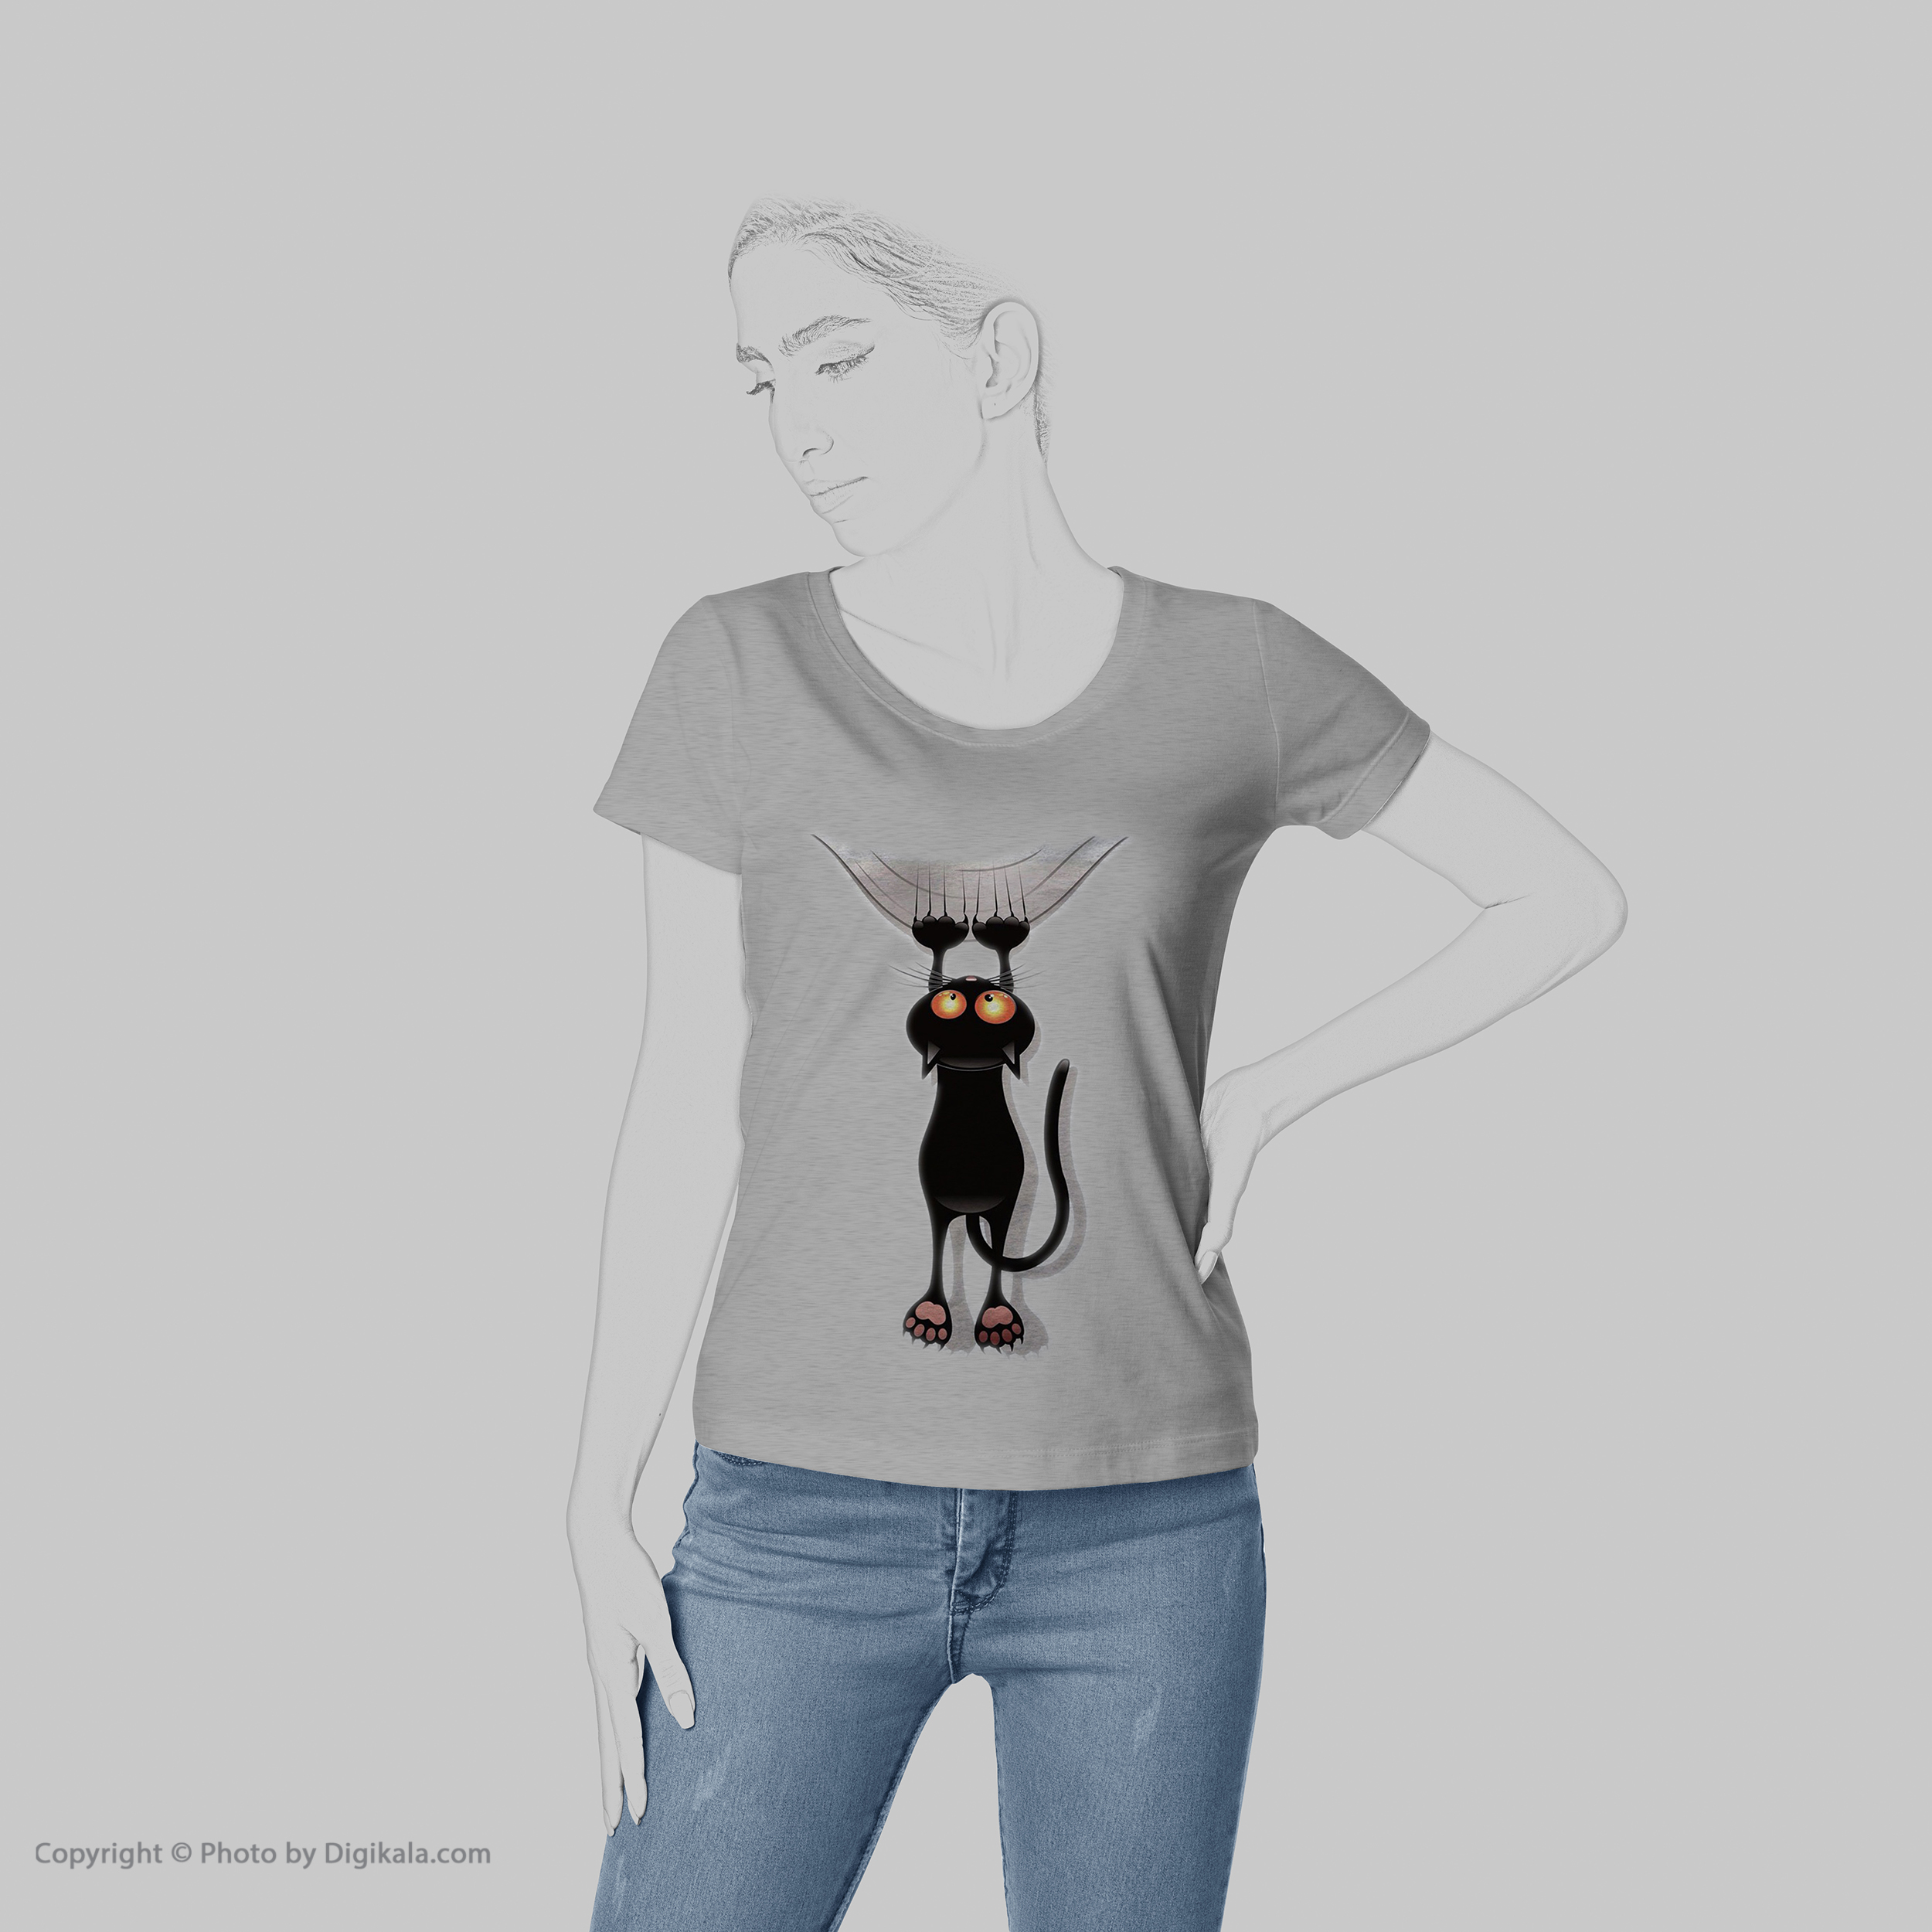 تی شرت به رسم طرح گربه کد 456 -  - 6